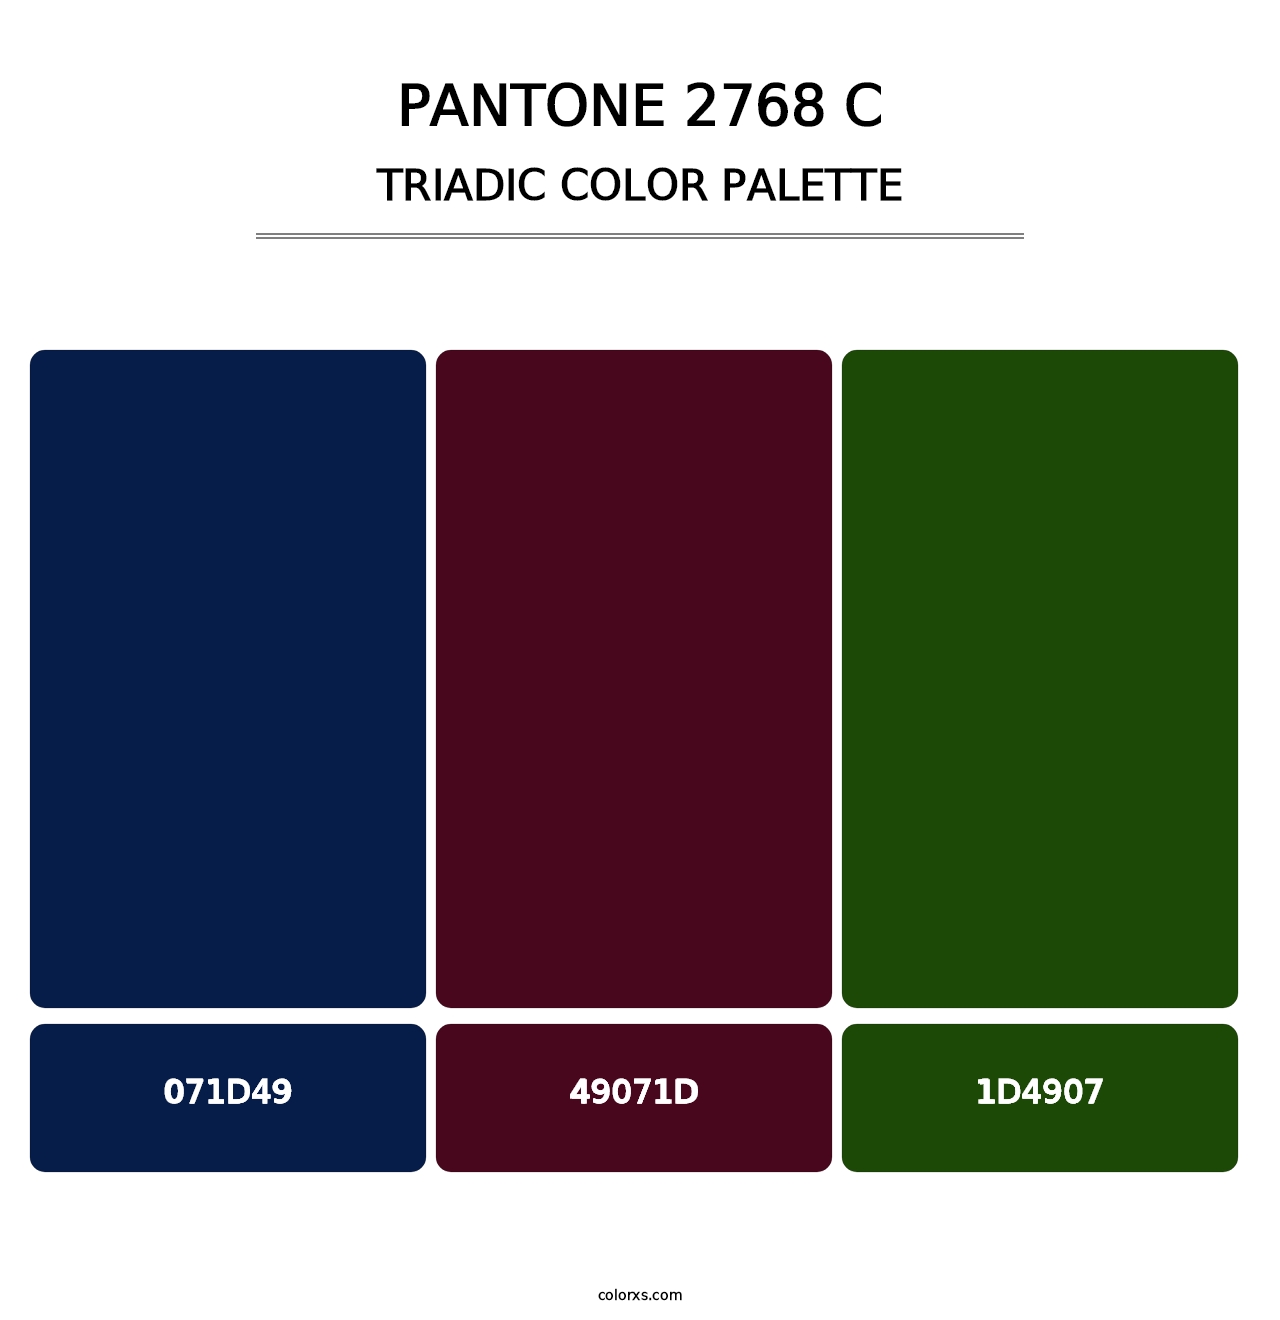 PANTONE 2768 C - Triadic Color Palette